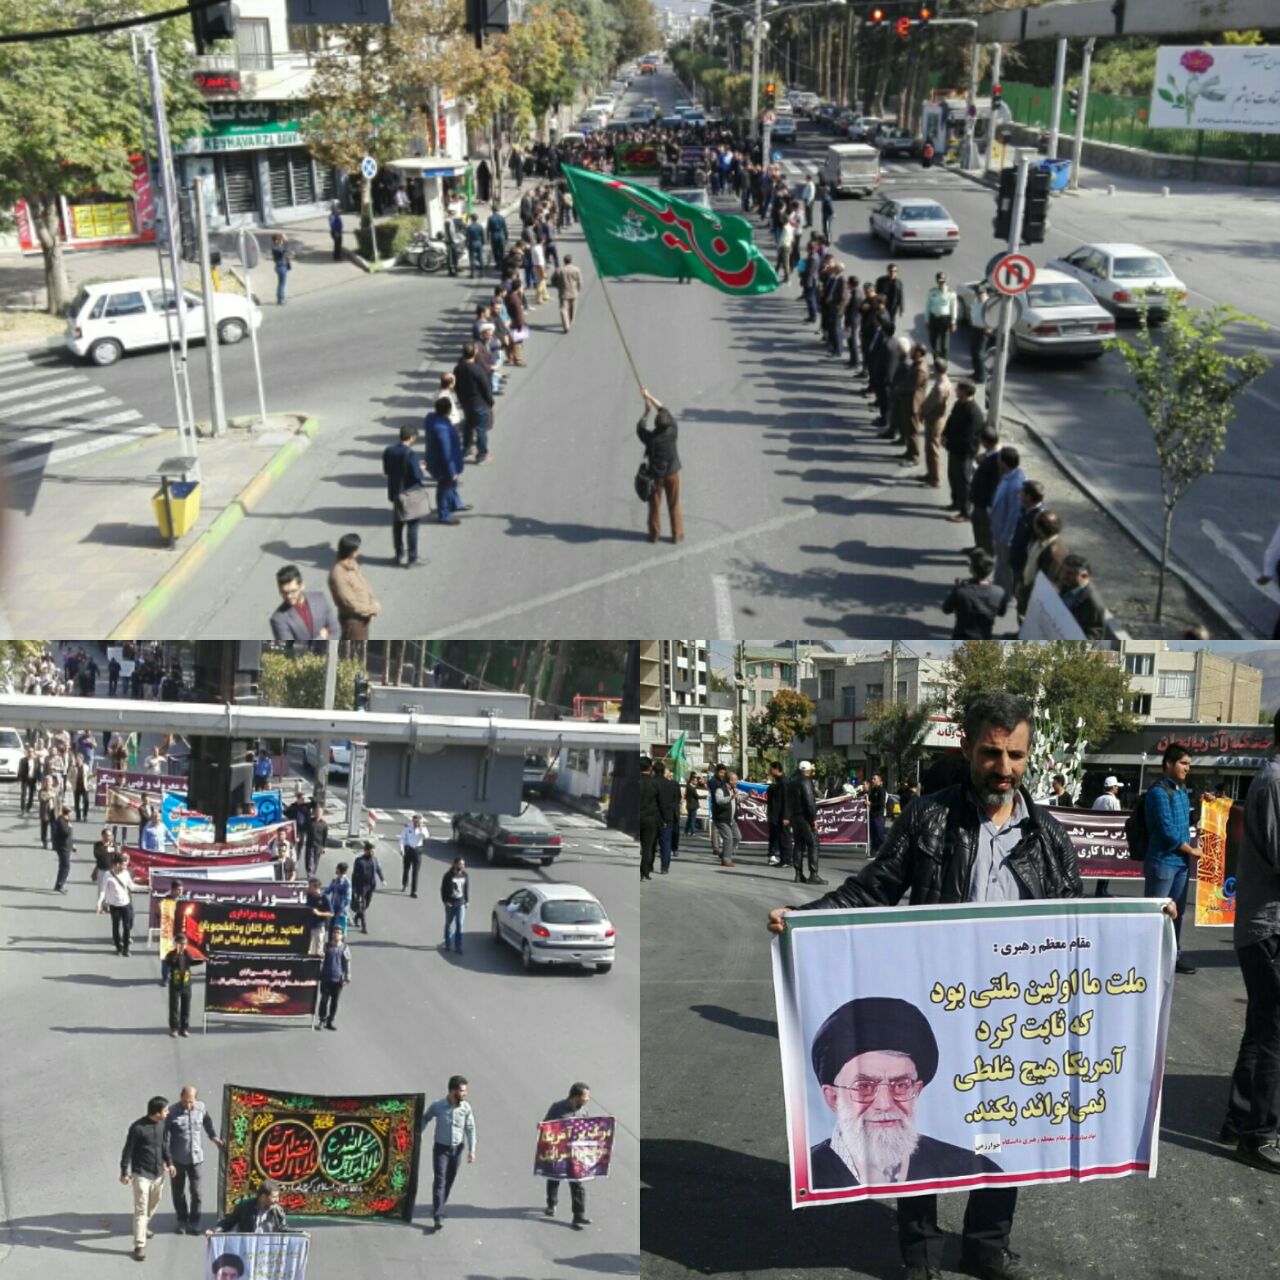 تجمع اعتراضی اساتید و دانشجویان استان البرز در پاسخ به سخنان سخیف رئیس جمهور امریکا